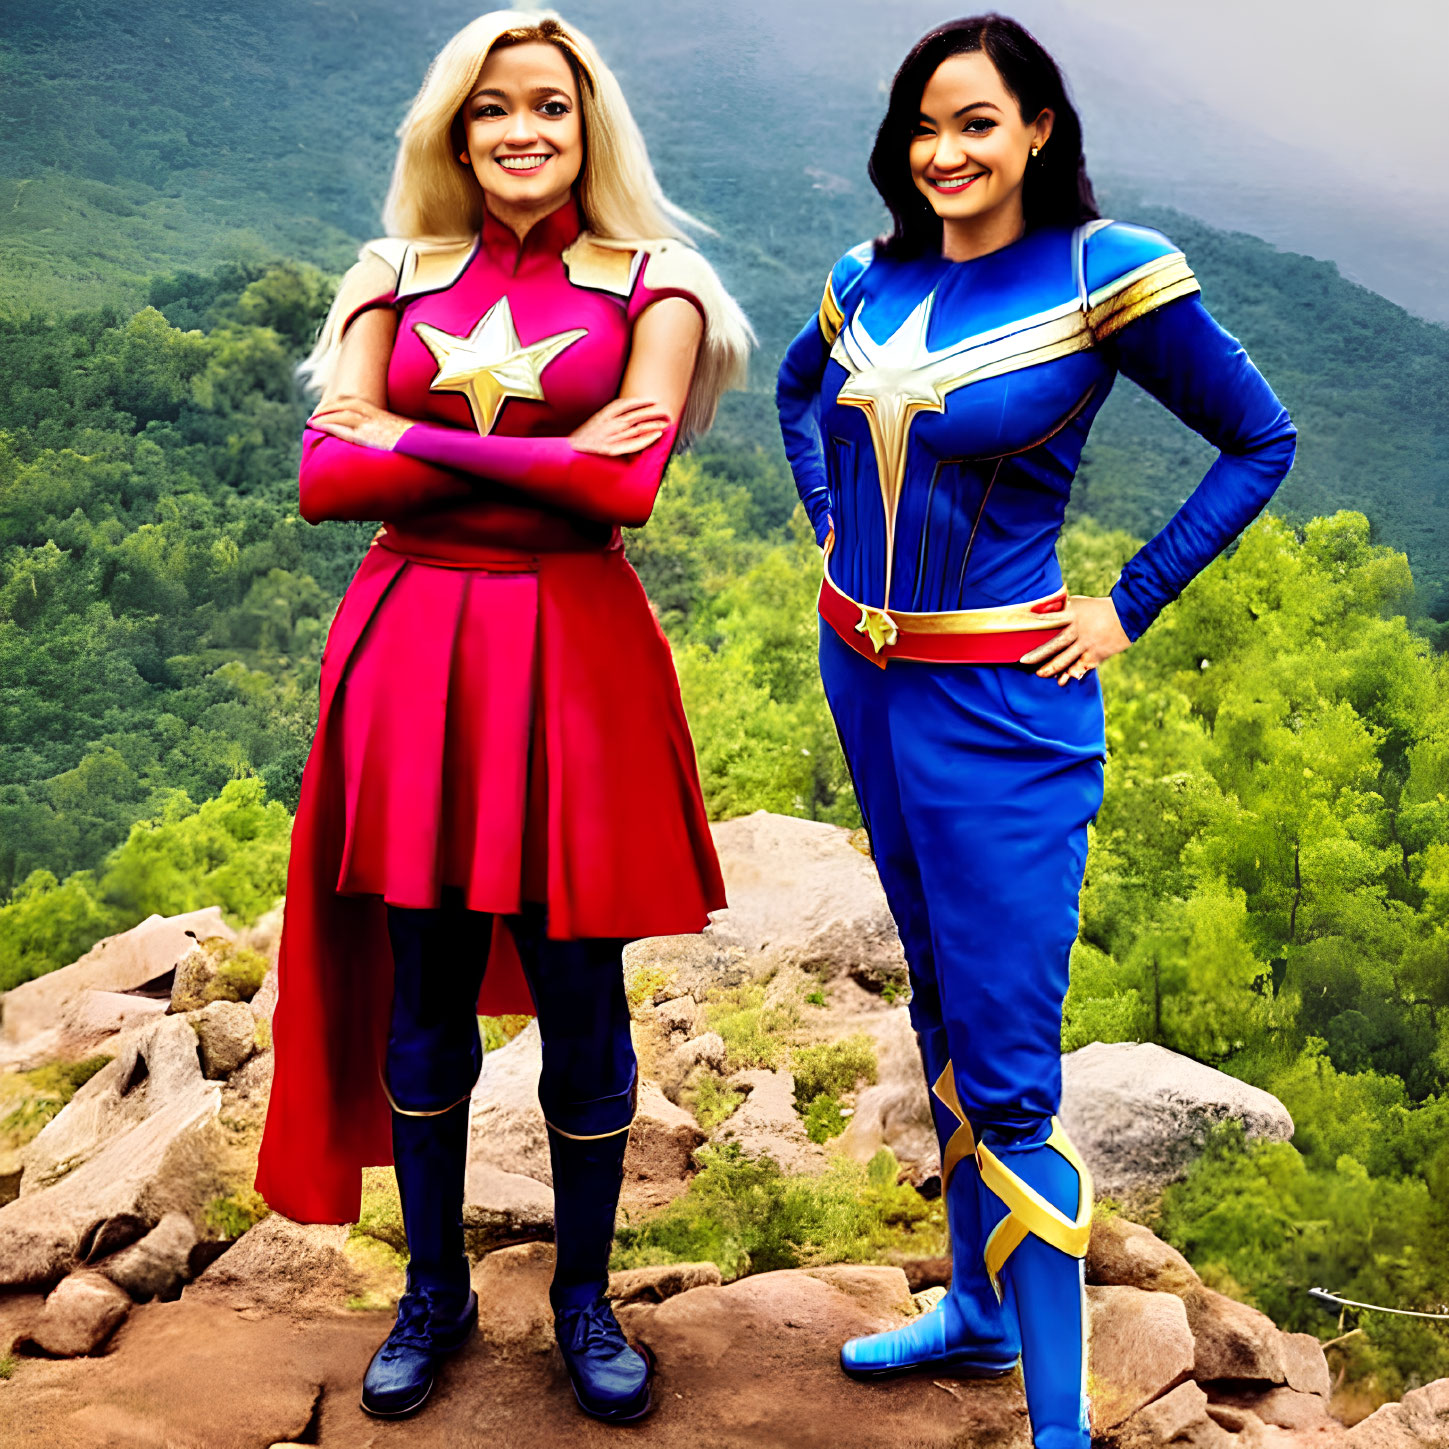 Superhero Costumes Resembling Captain Marvel on Rocky Terrain